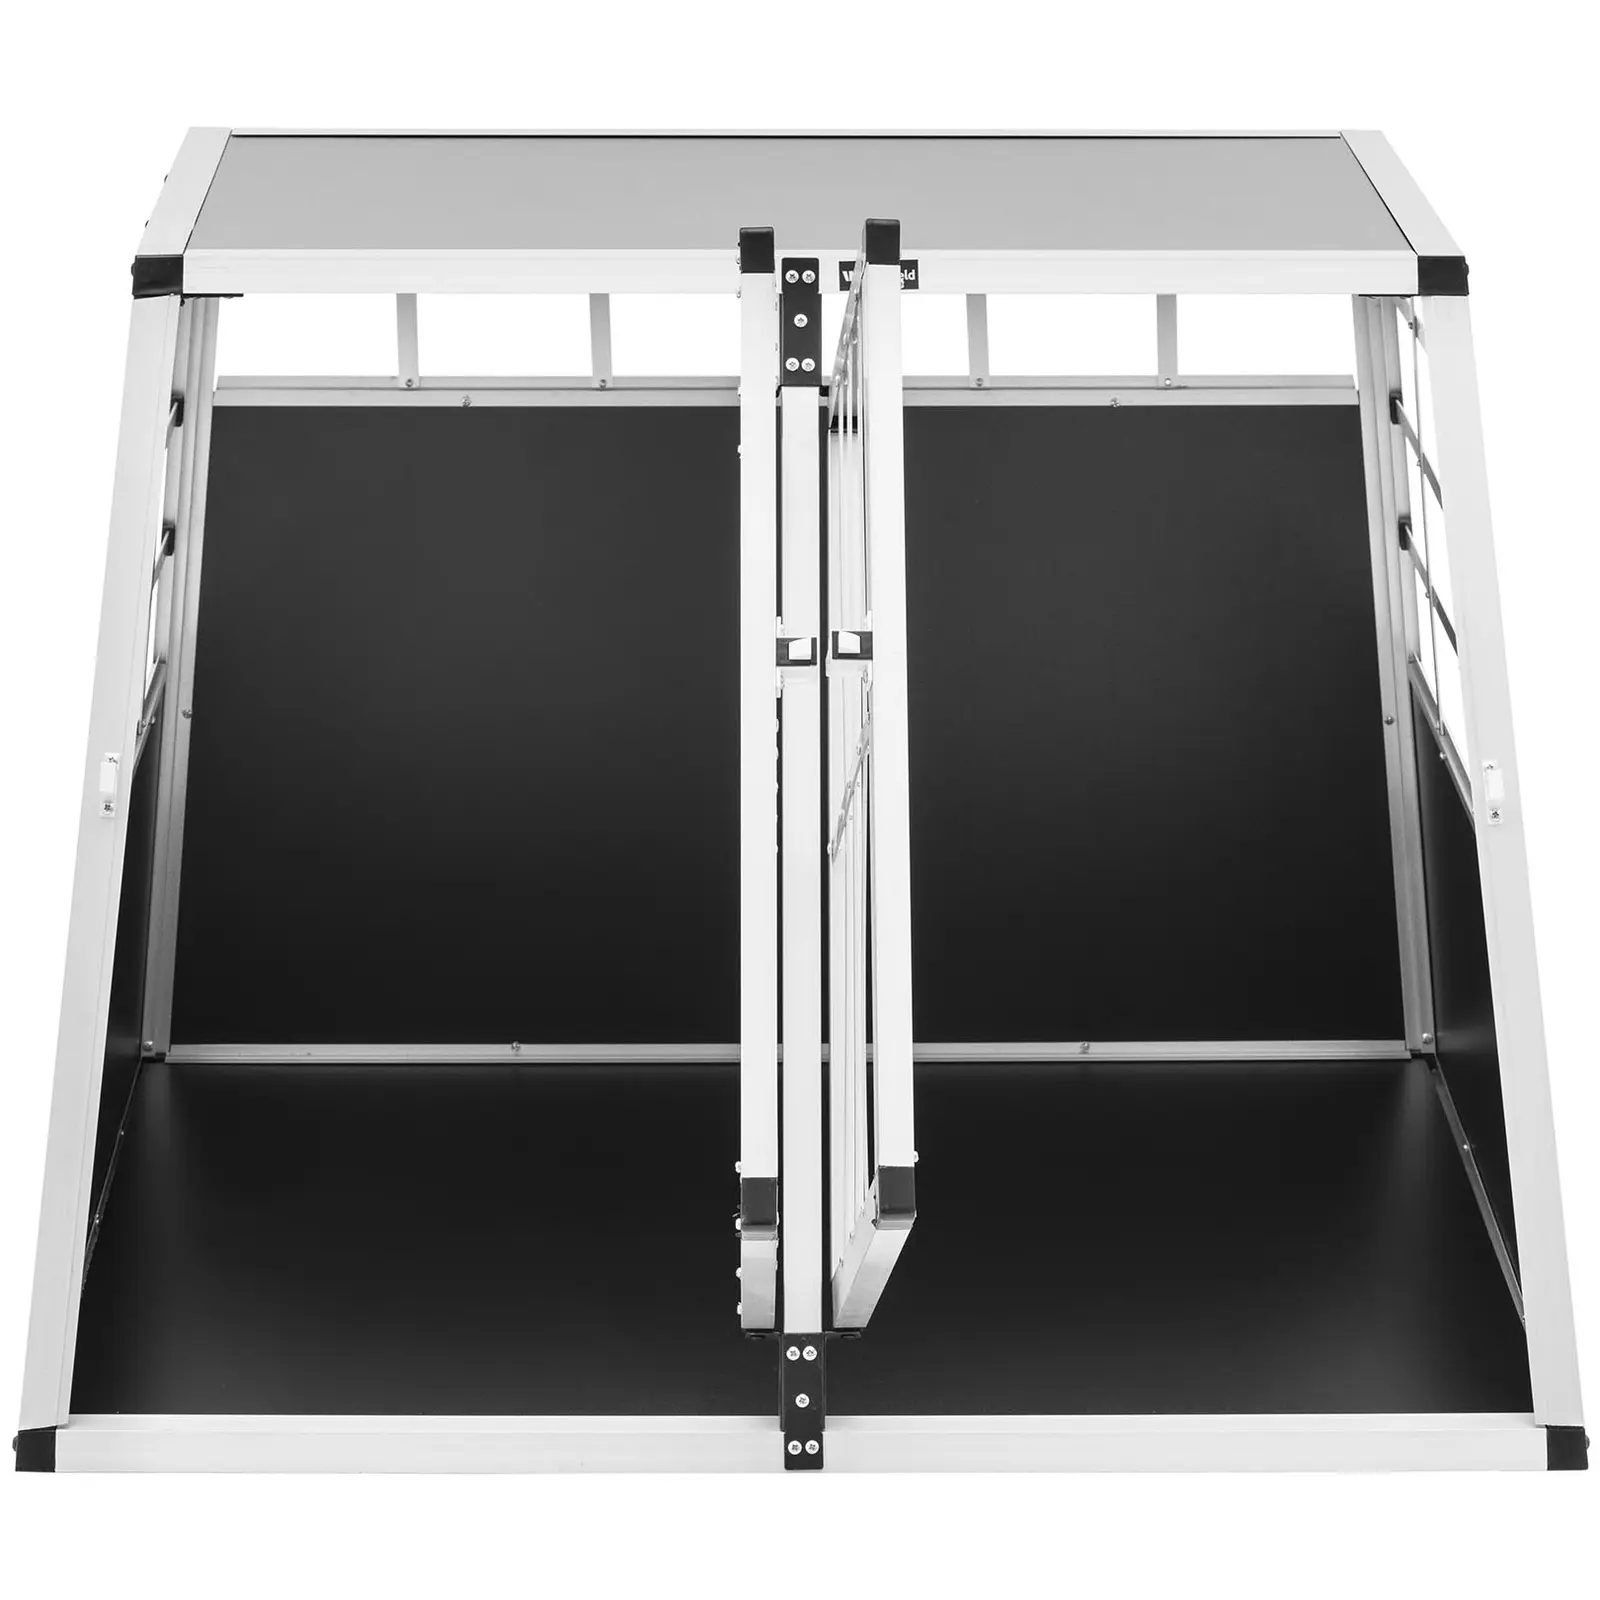 Hundebur - aluminium - trapesformet - 85 x 95 x 69 cm